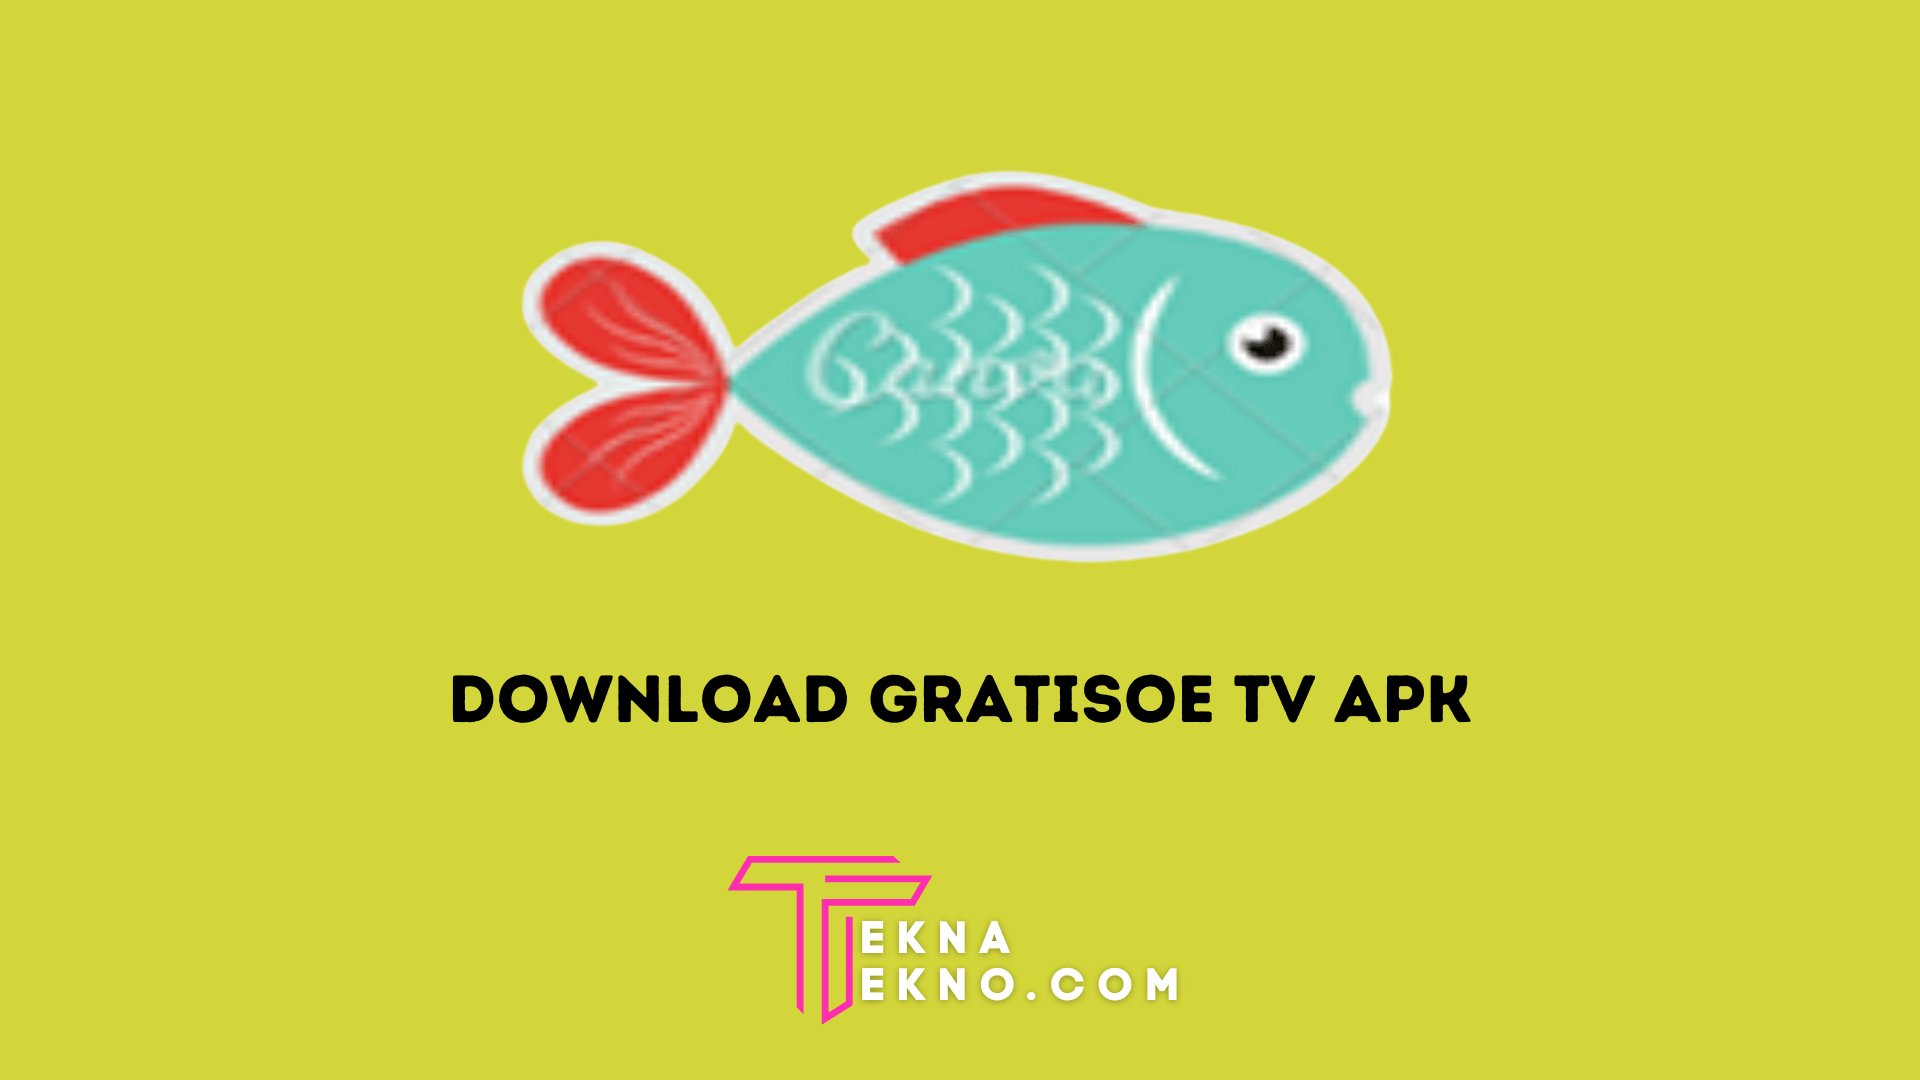 Download Gratisoe TV APK Update Versi Terbaru